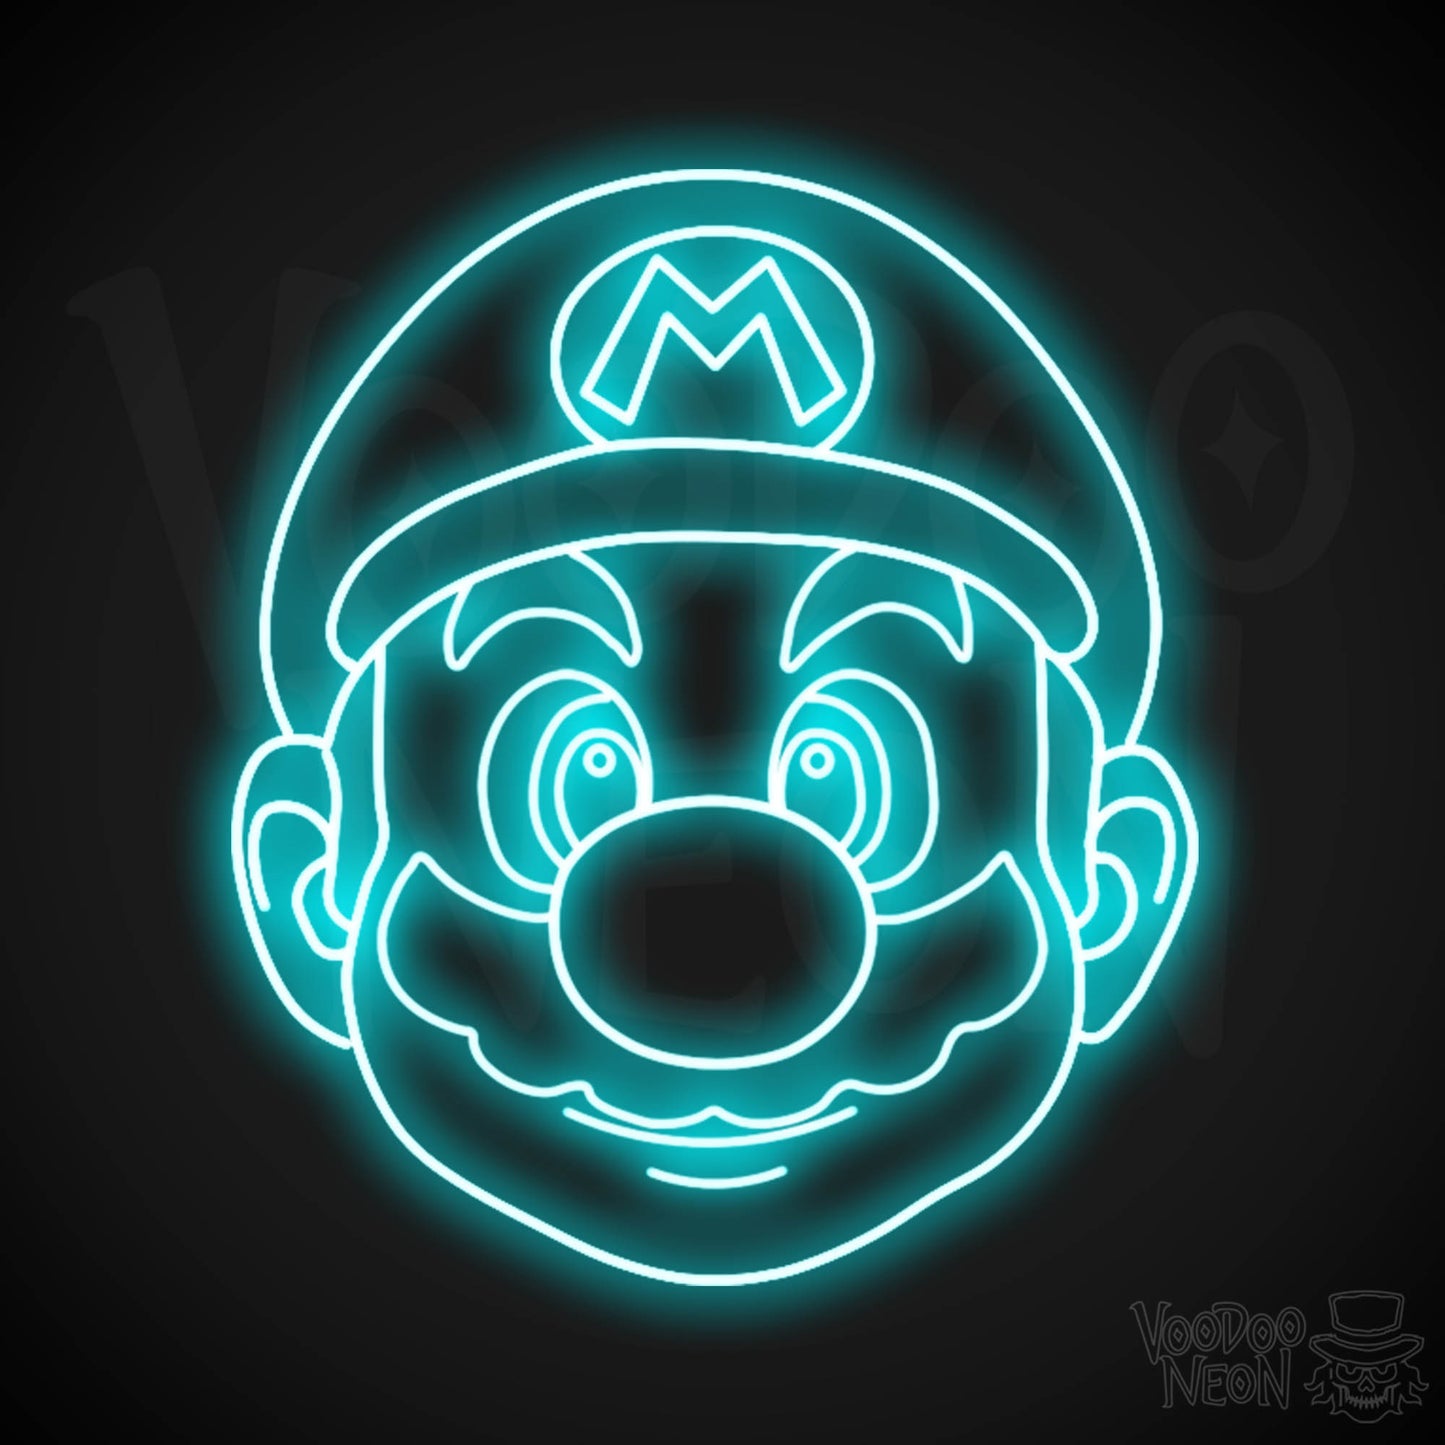 Mario Neon Sign - Mario Sign - Mario Wall Art - LED Neon Wall Art - Color Ice Blue